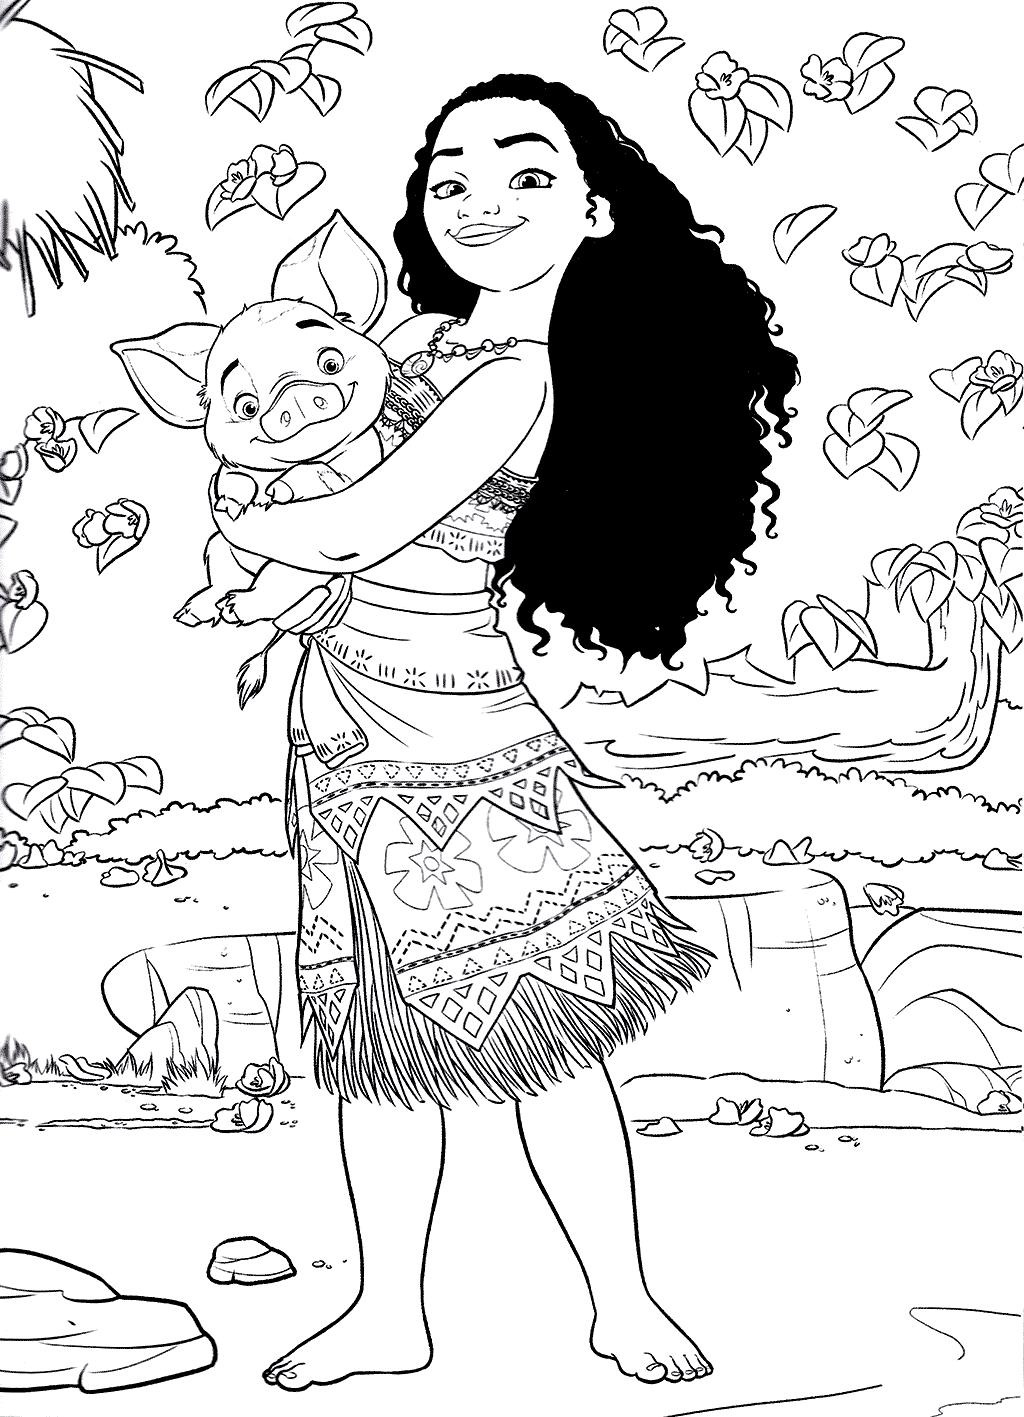 Раскраски к современному мультфильму Моана для детей  Раскраска принцесса Моана и поросенок Пуа